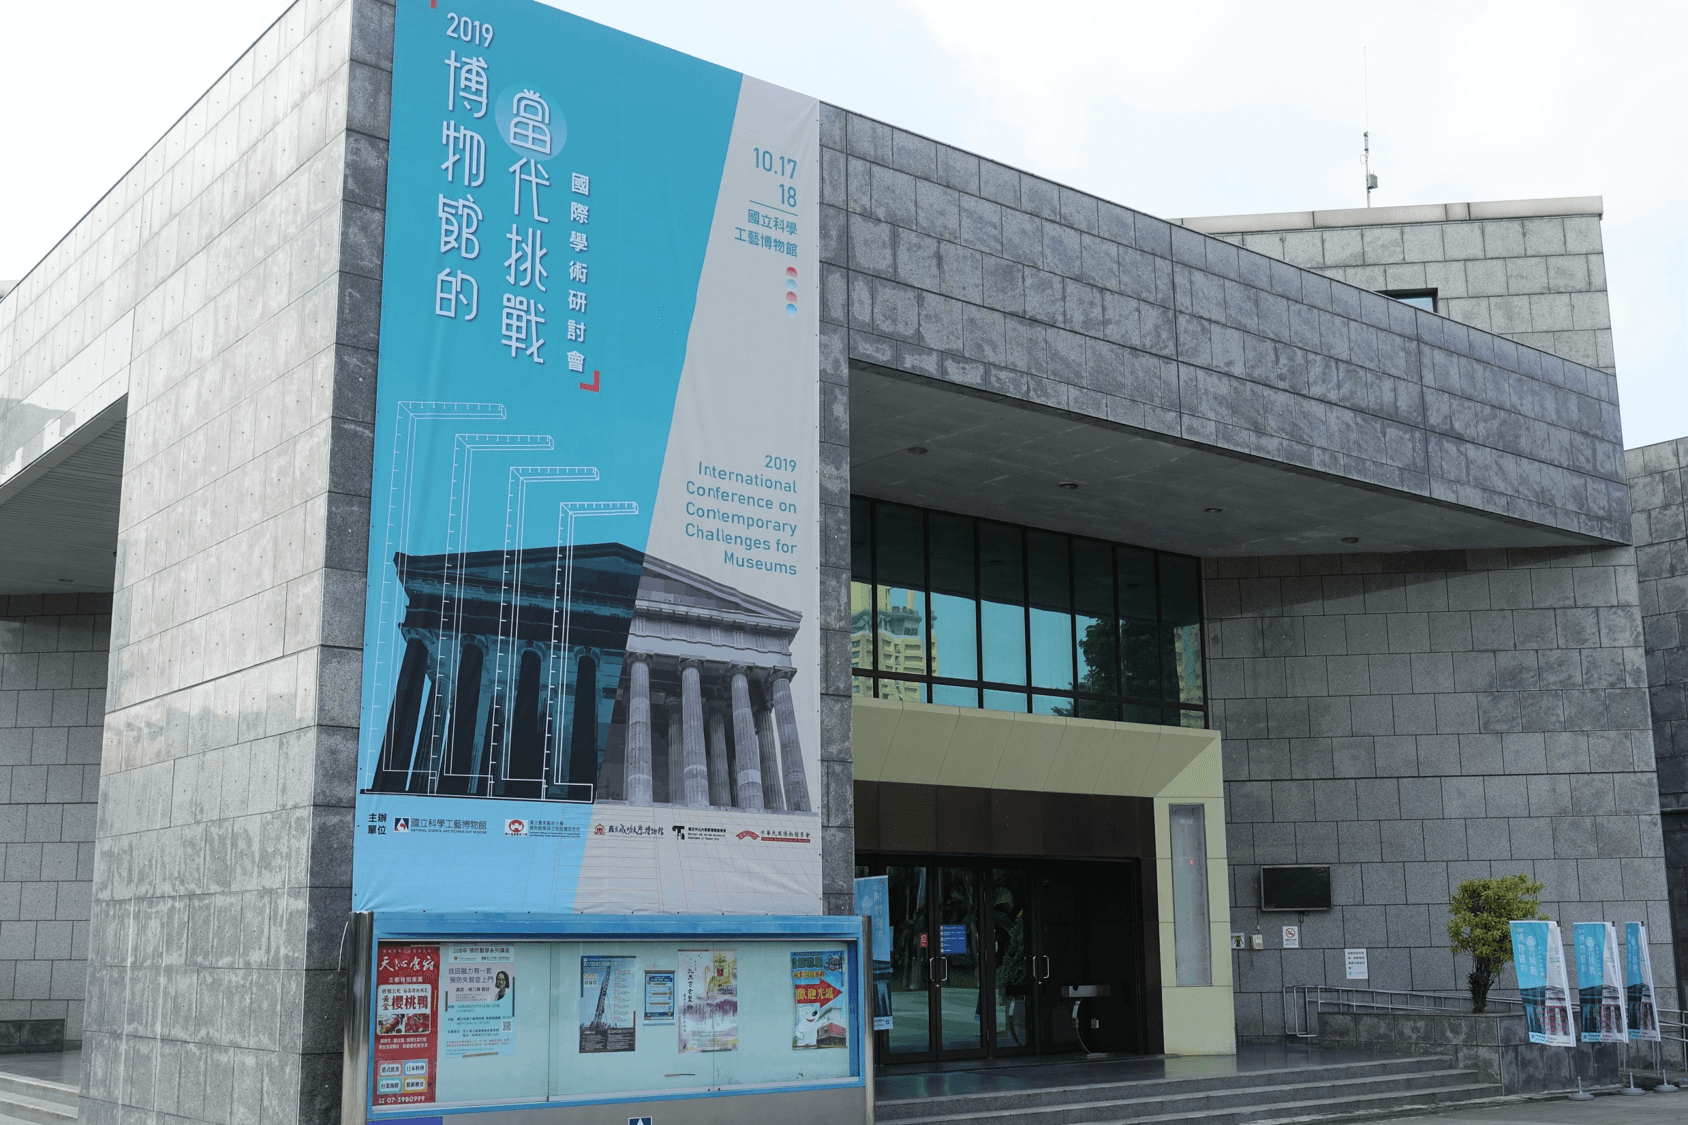 【課程活動/研討會】國立科學工藝博物館：「2019博物館的當代挑戰國際學術研討會」報導